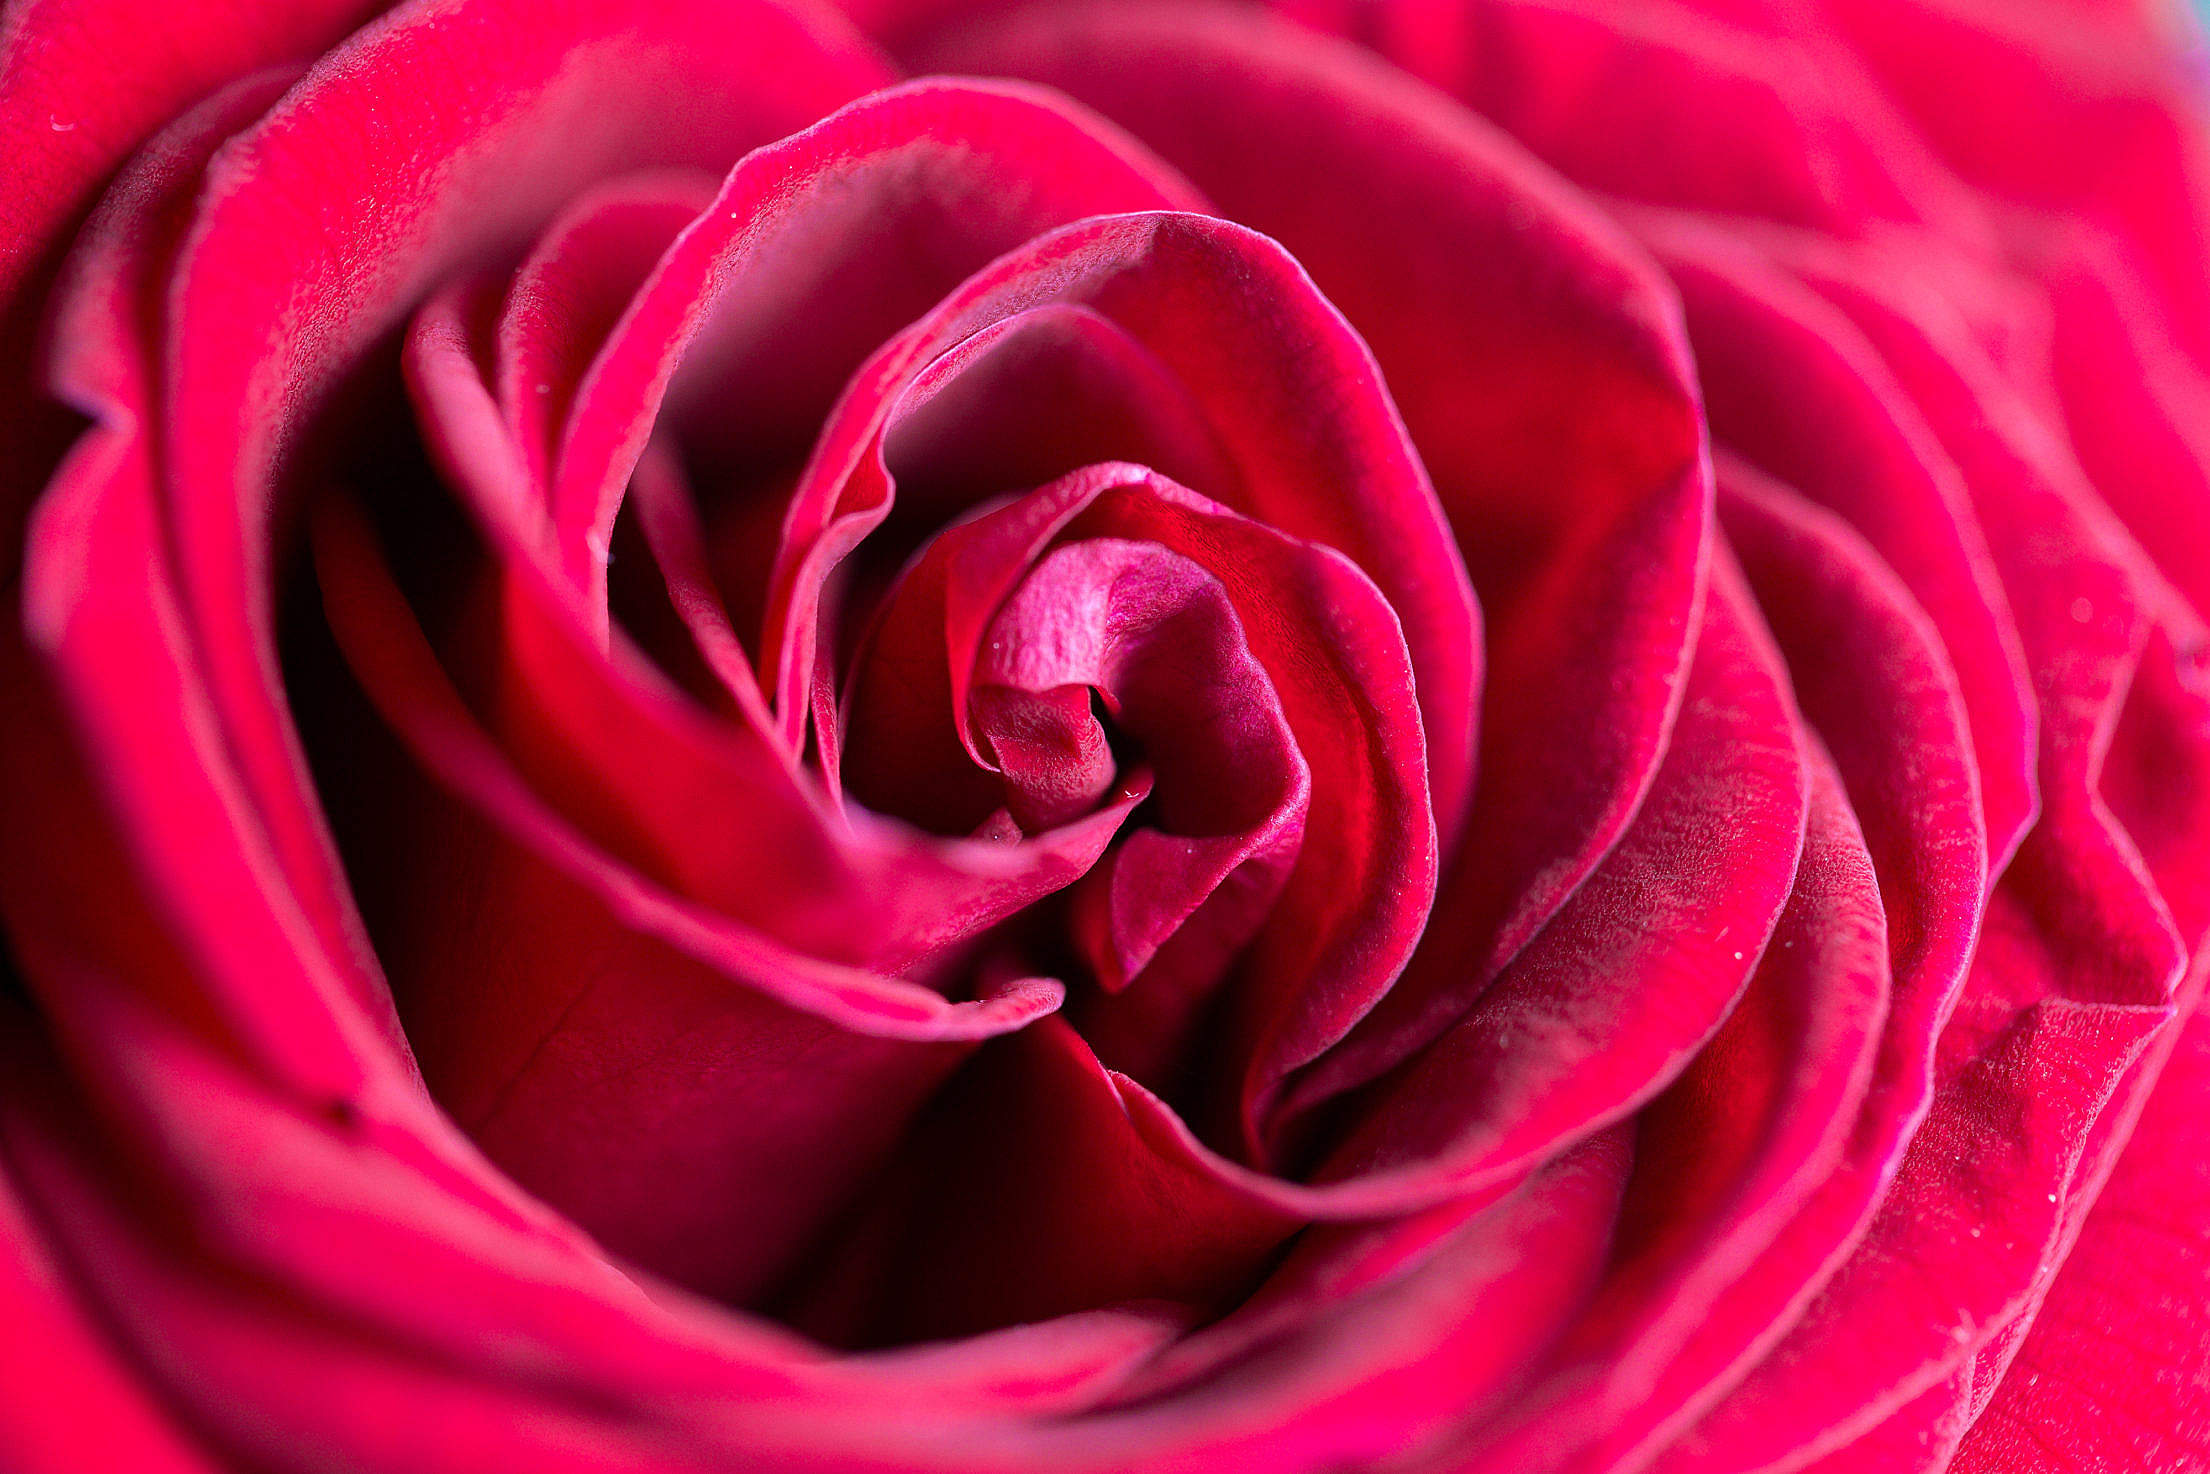 Rose closeup photo